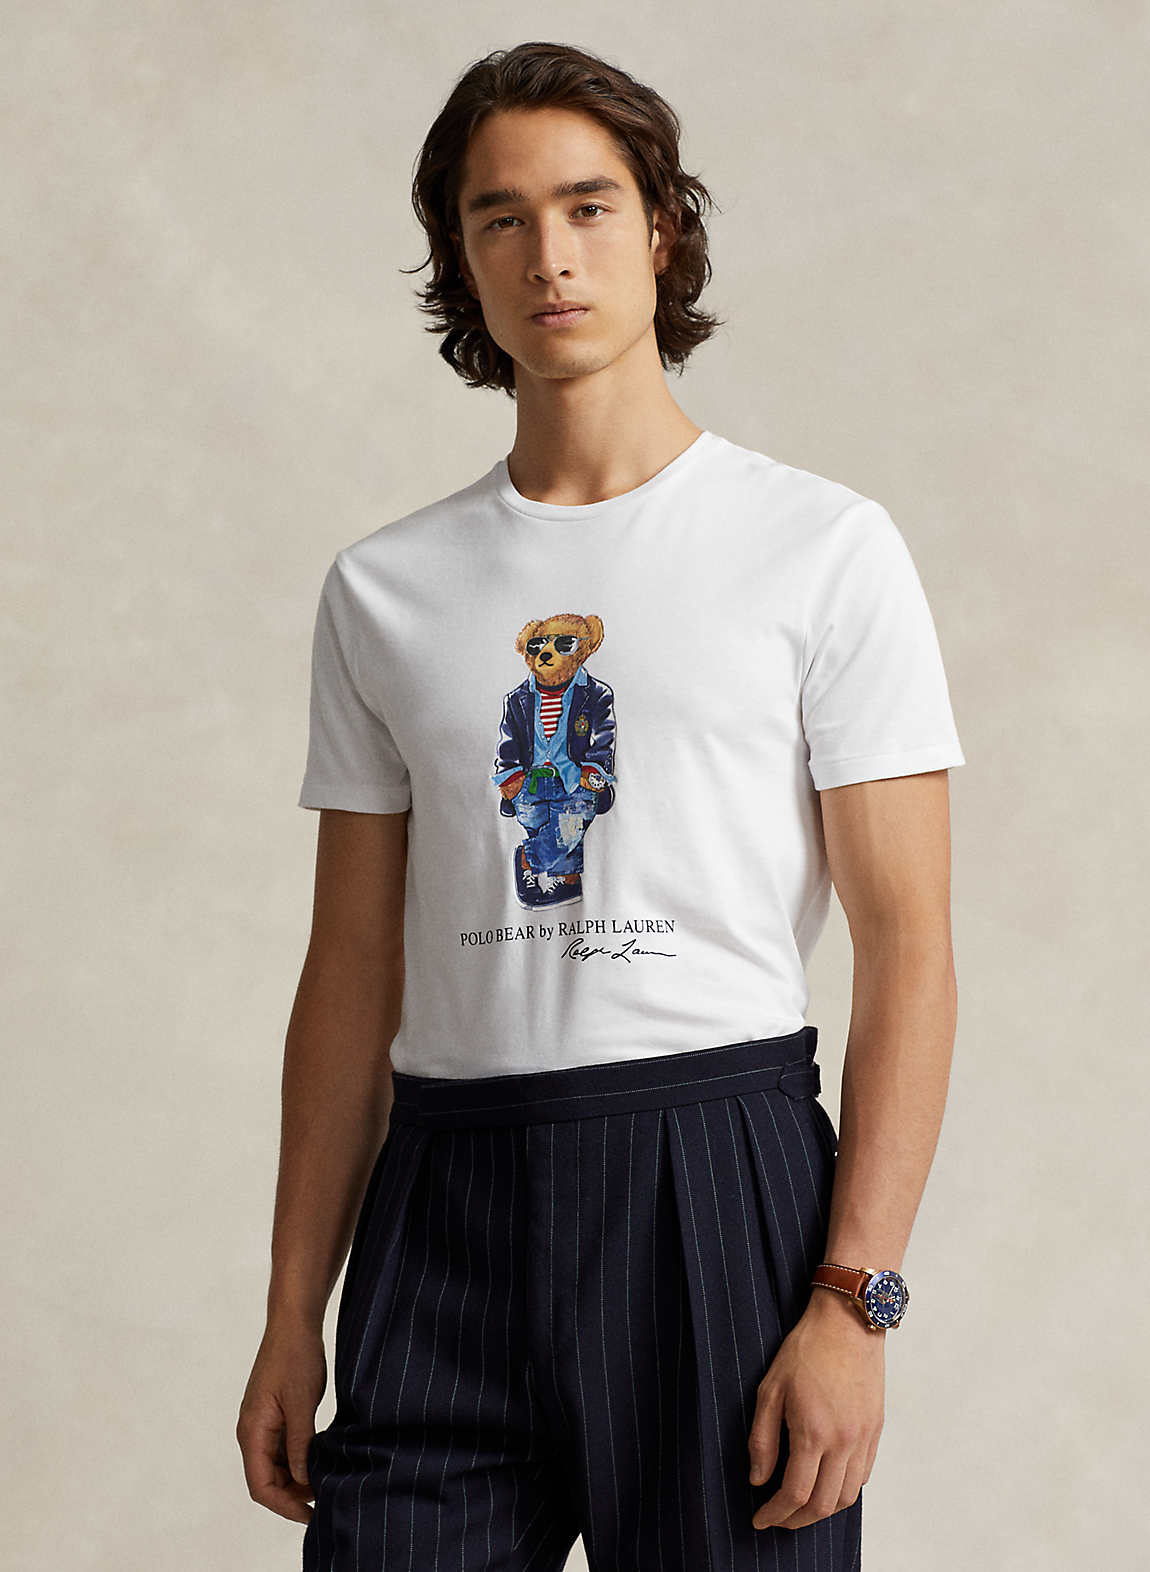 Tシャツ/カットソー(半袖/袖なし) ポロ ラルフローレン Ｔシャツ ポロベア クリケット 1290.3円 価格は安く